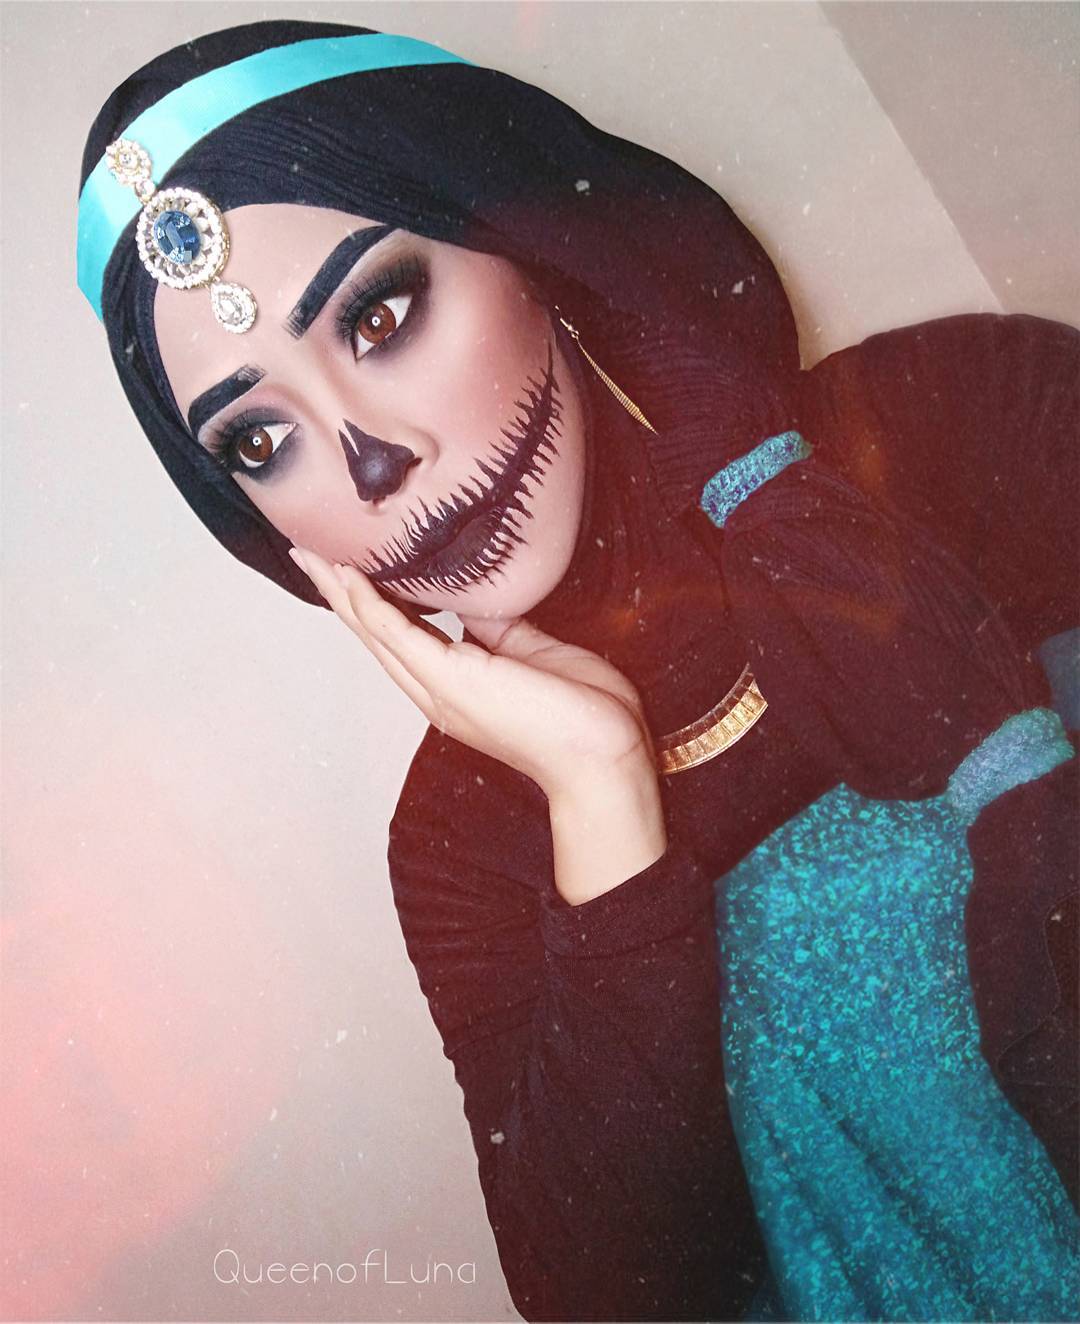 Esta cosplayer de Malasia usa hijabs para recrear sus disfraces ¡Y le quedan increíbles! 😮